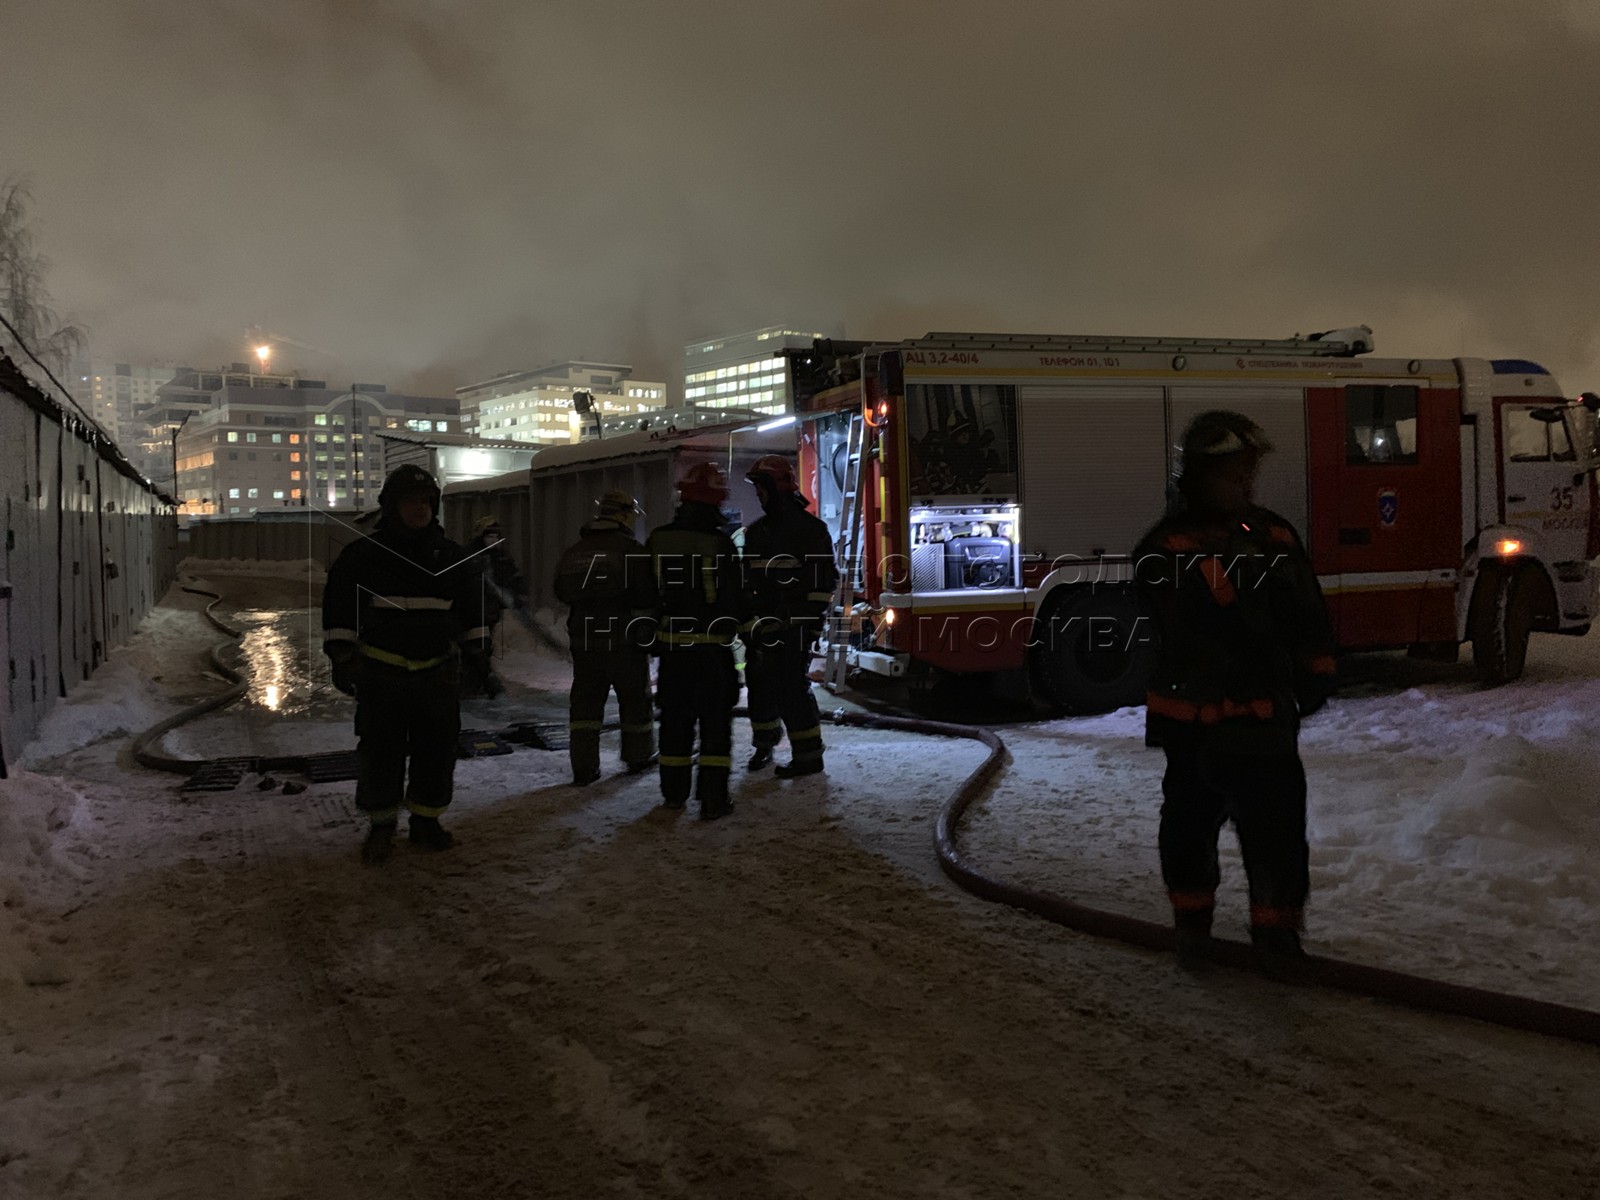 Пожар в московском вчера. Пожар в Москве сегодня на севере Москвы. Пожар на севере Москвы сейчас. Пожар в Москве сегодня на севере. Пожар в Москве сейчас на севере Москвы.